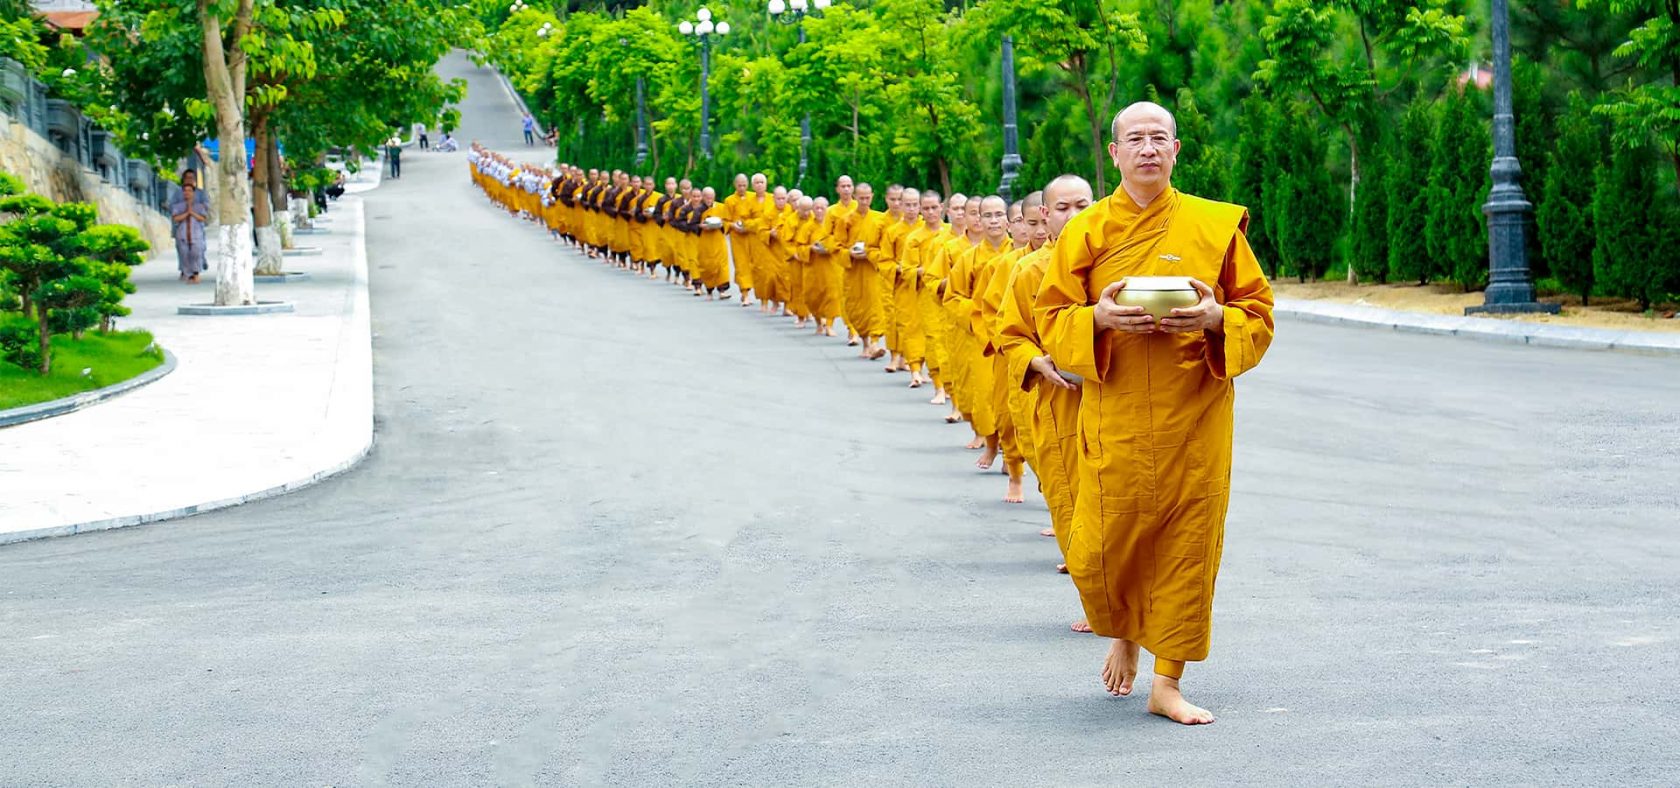 Tăng đoàn chùa Ba Vàng trang nghiêm trì bình khất thực trong khuôn viên bổn tự